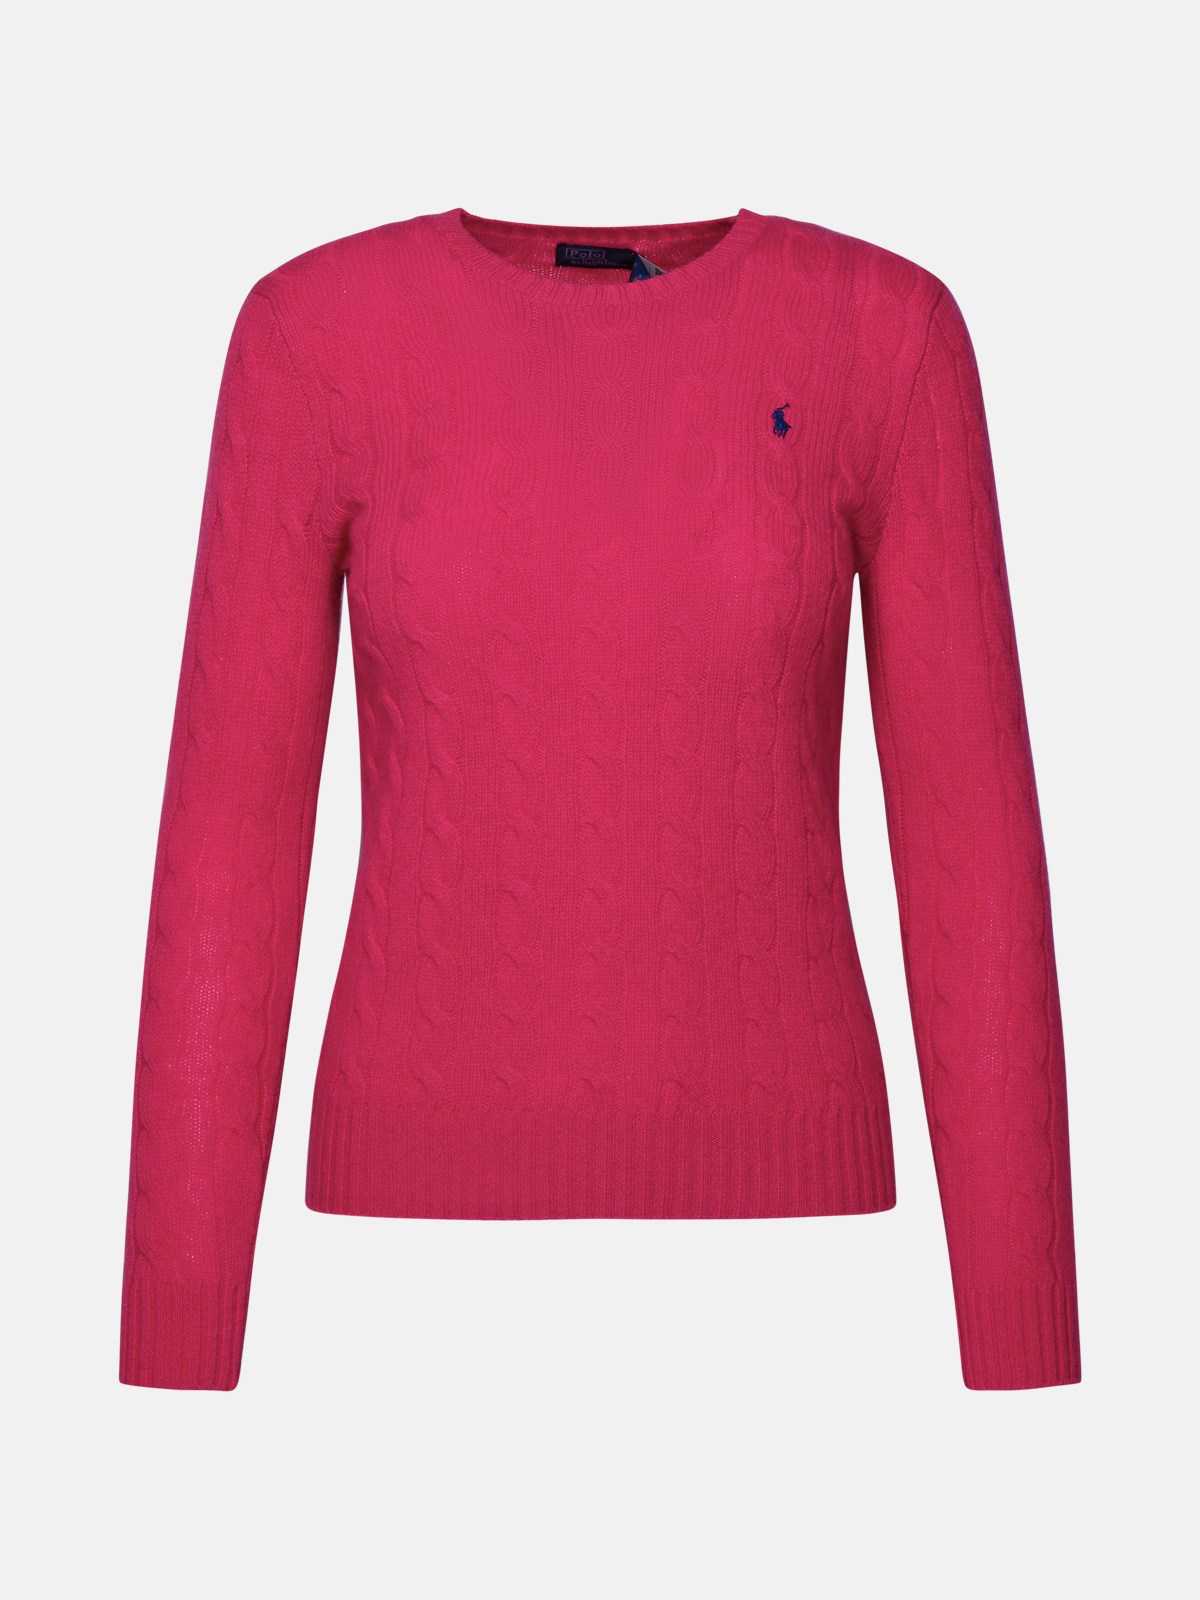 Polo Ralph Lauren Kids' Fuchsia Cashmere Blend Sweater